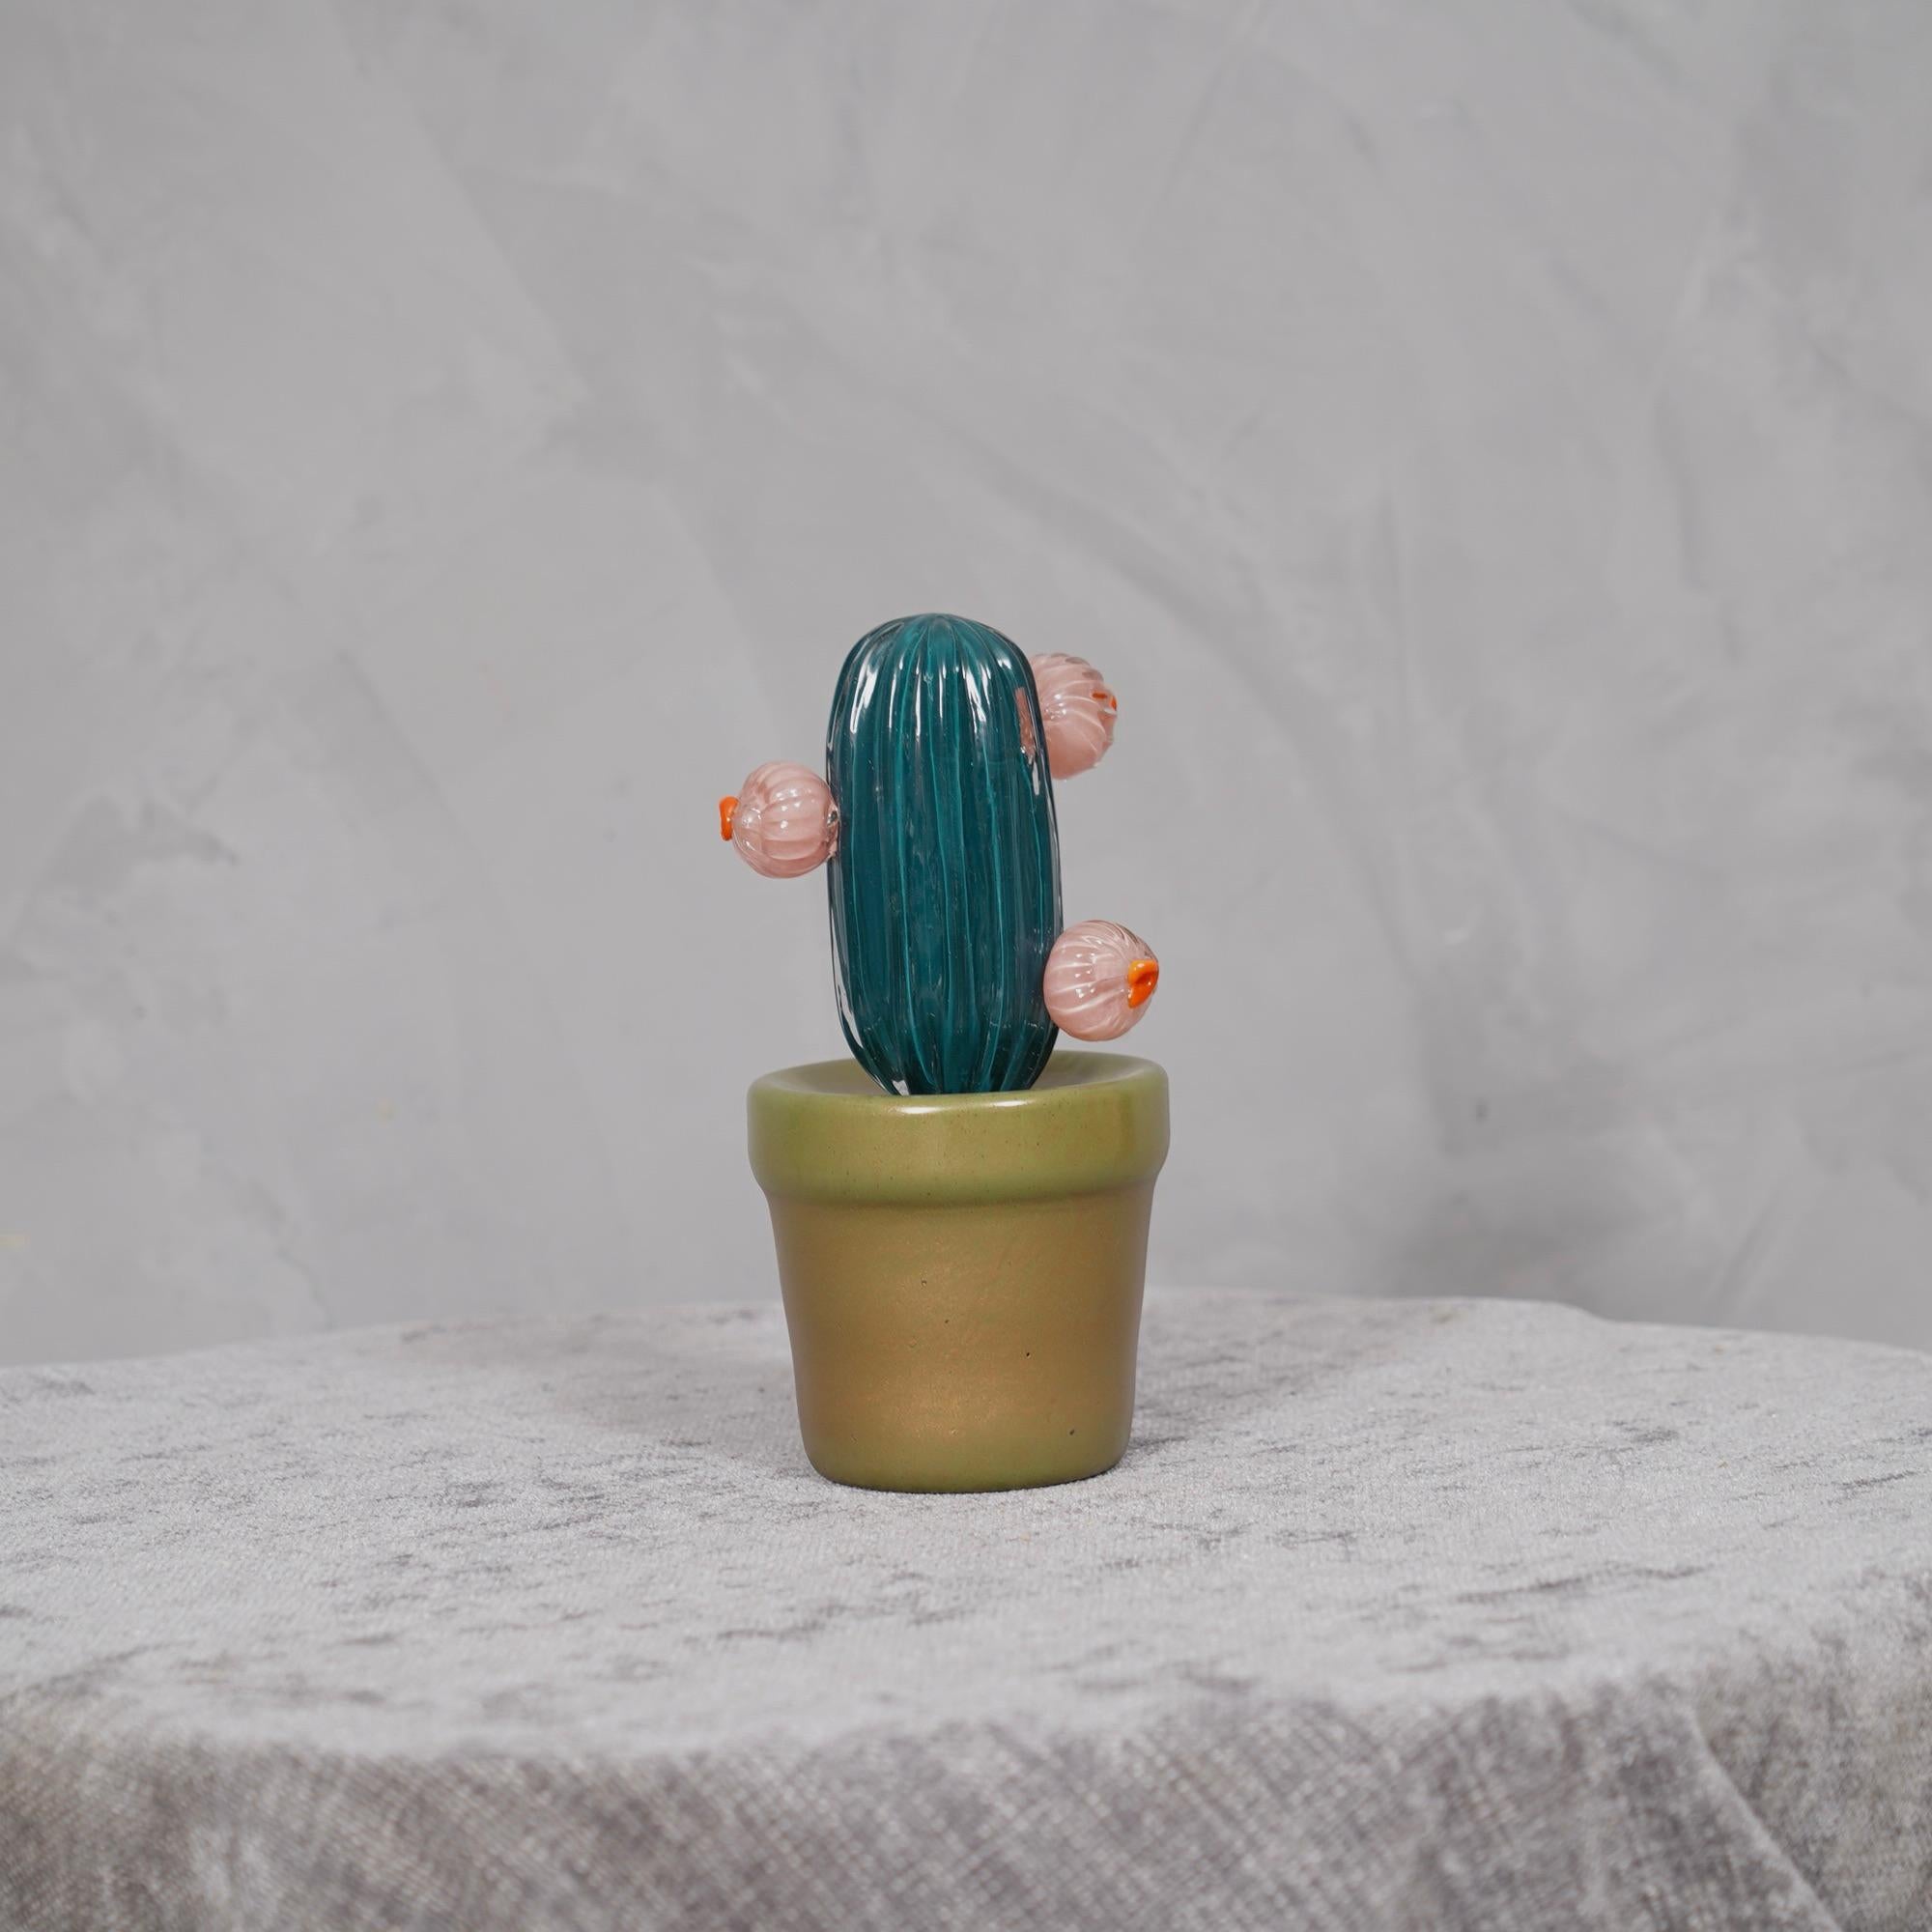 Design italien, ce cactus est une icône de la mode italienne, vert d'eau avec un beau vase en verre rouge en dessous.

En édition limitée, fabriqués dans l'un des fours de Venise, les cactus sont en verre de Murano ont un vase en verre rouge et